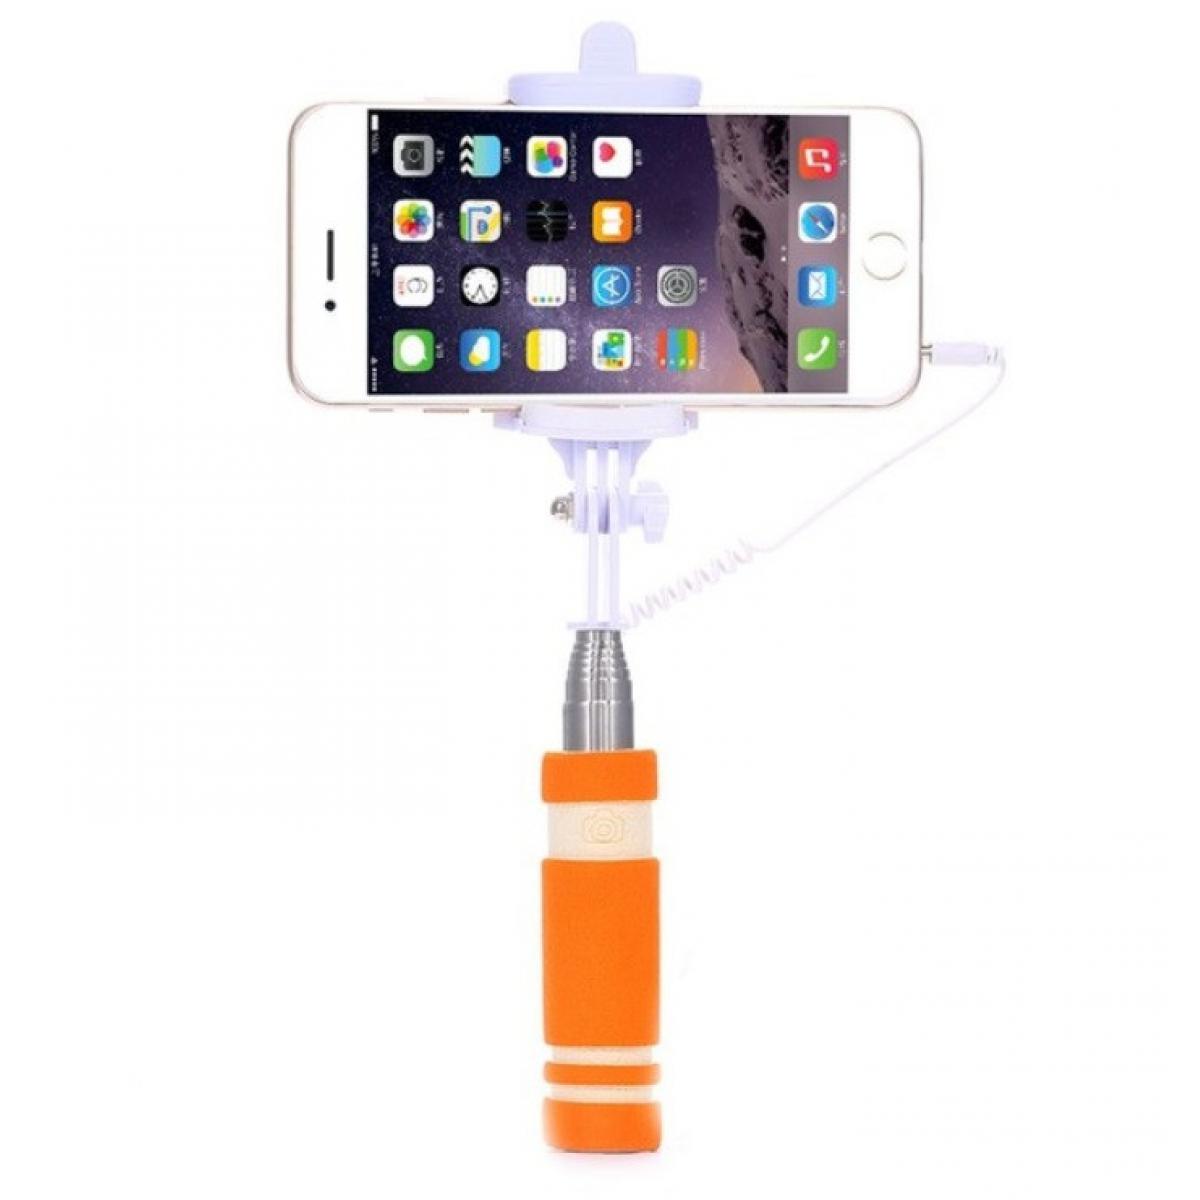 Shot - Mini Perche Selfie pour HUAWEI P30 lite XL Smartphone avec Cable Jack Selfie Stick Android IOS Reglable Bouton Photo (ORANGE) - Autres accessoires smartphone